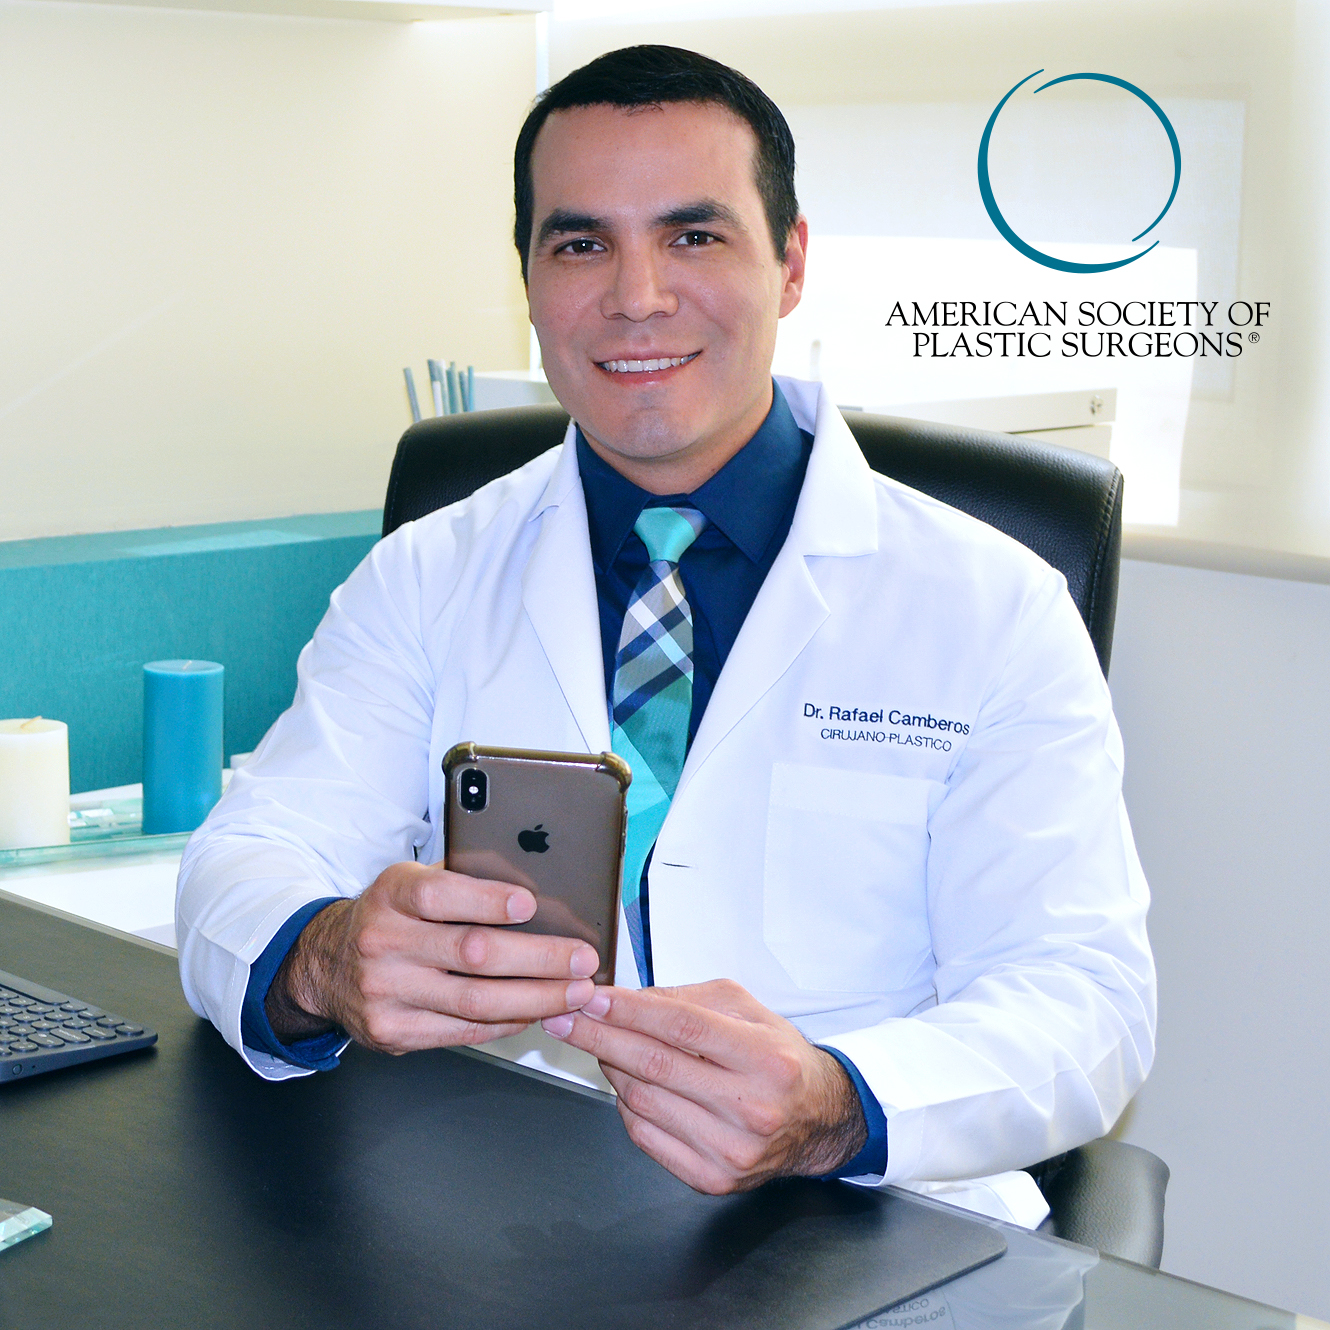 En Cirugía Plástica Tijuana, el Dr. Rafael Camberos Solís ofrece procedimientos de cirugía plástica, estética y reconstructiva en Tijuana, México.